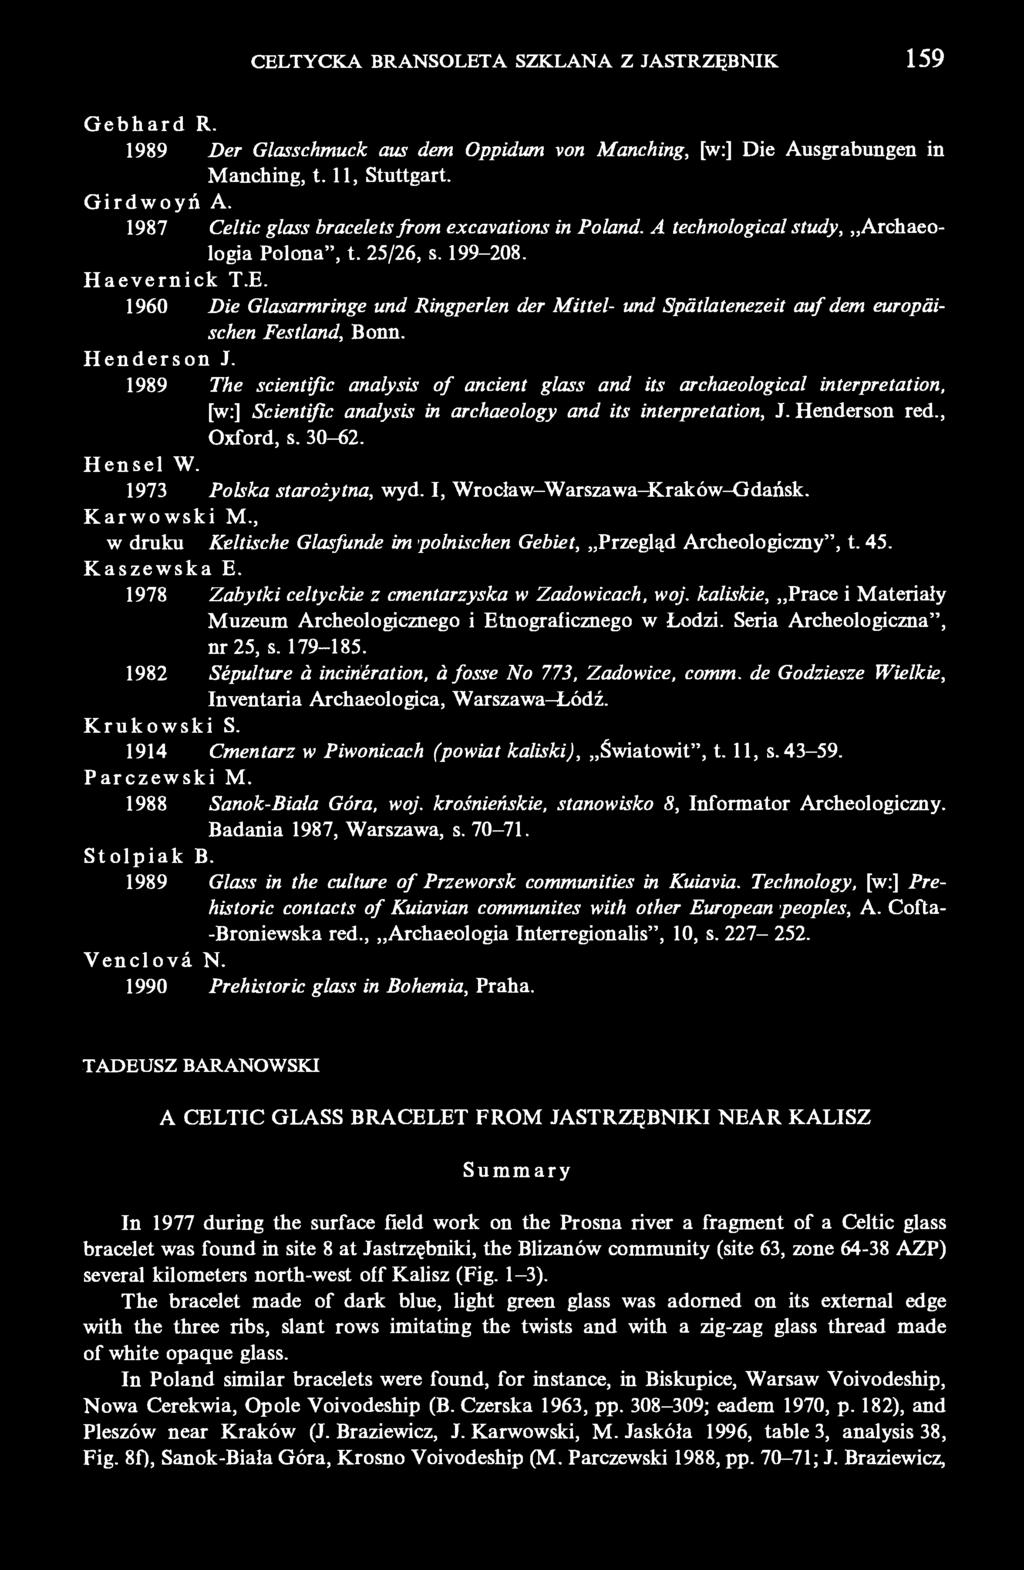 CELTYCKA BRANSOLETA SZKLANA Z JASTRZĘBNIK 159 Gebhard R. 1989 Der Glasschmuck aus dem Oppidum von Manching, [w:] Die Ausgrabungen in Manching, 1.11, Stuttgart. Girdwoyń A.